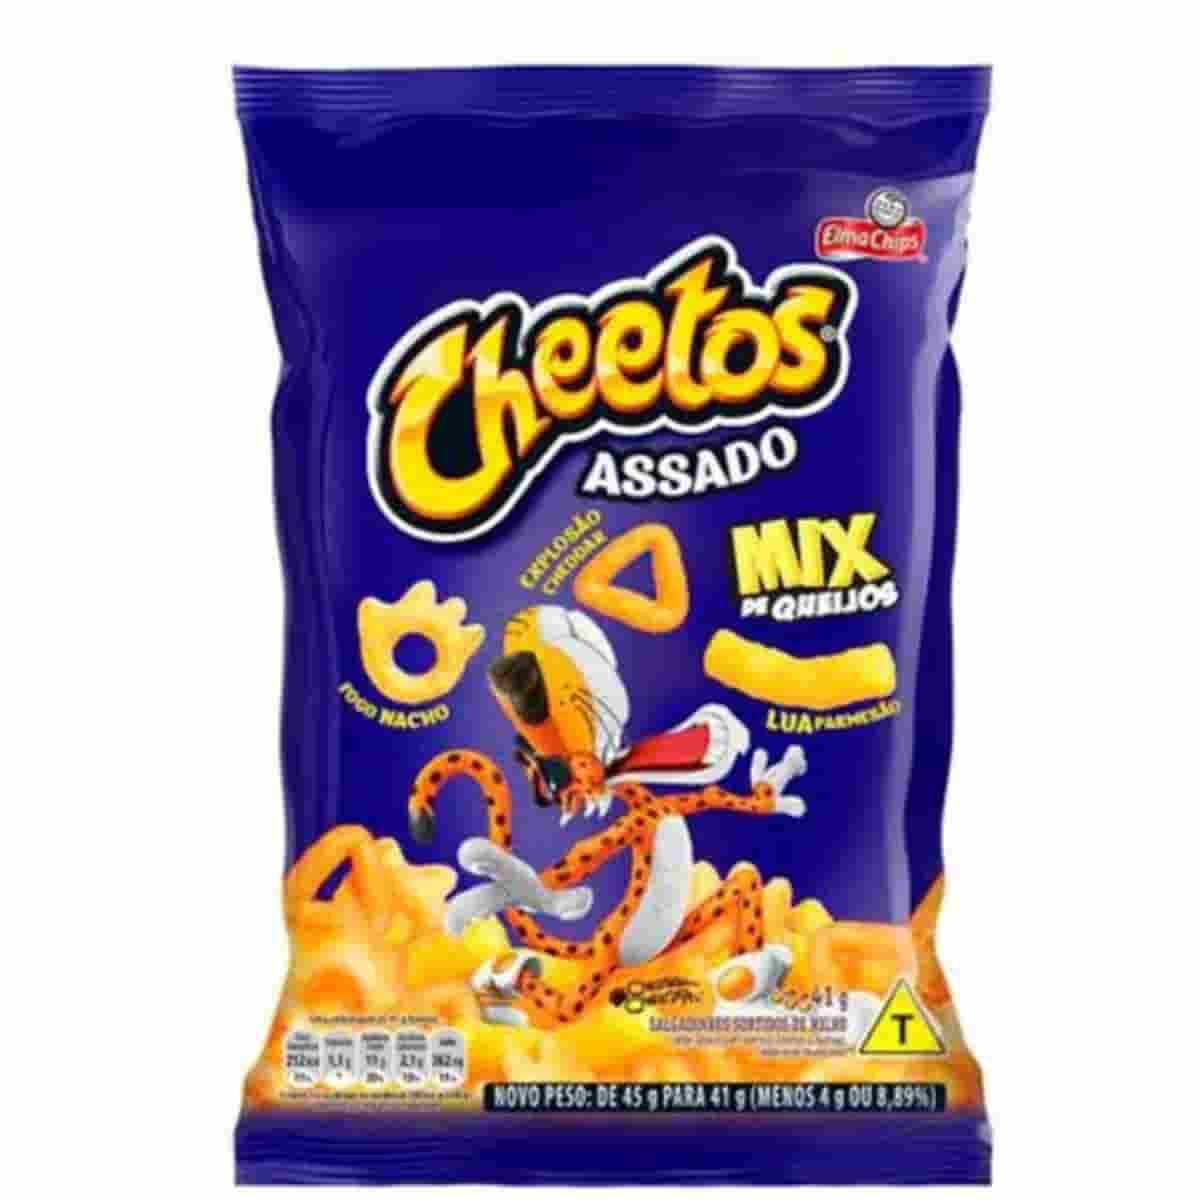  Cheetos Assado Sabor Requeijao